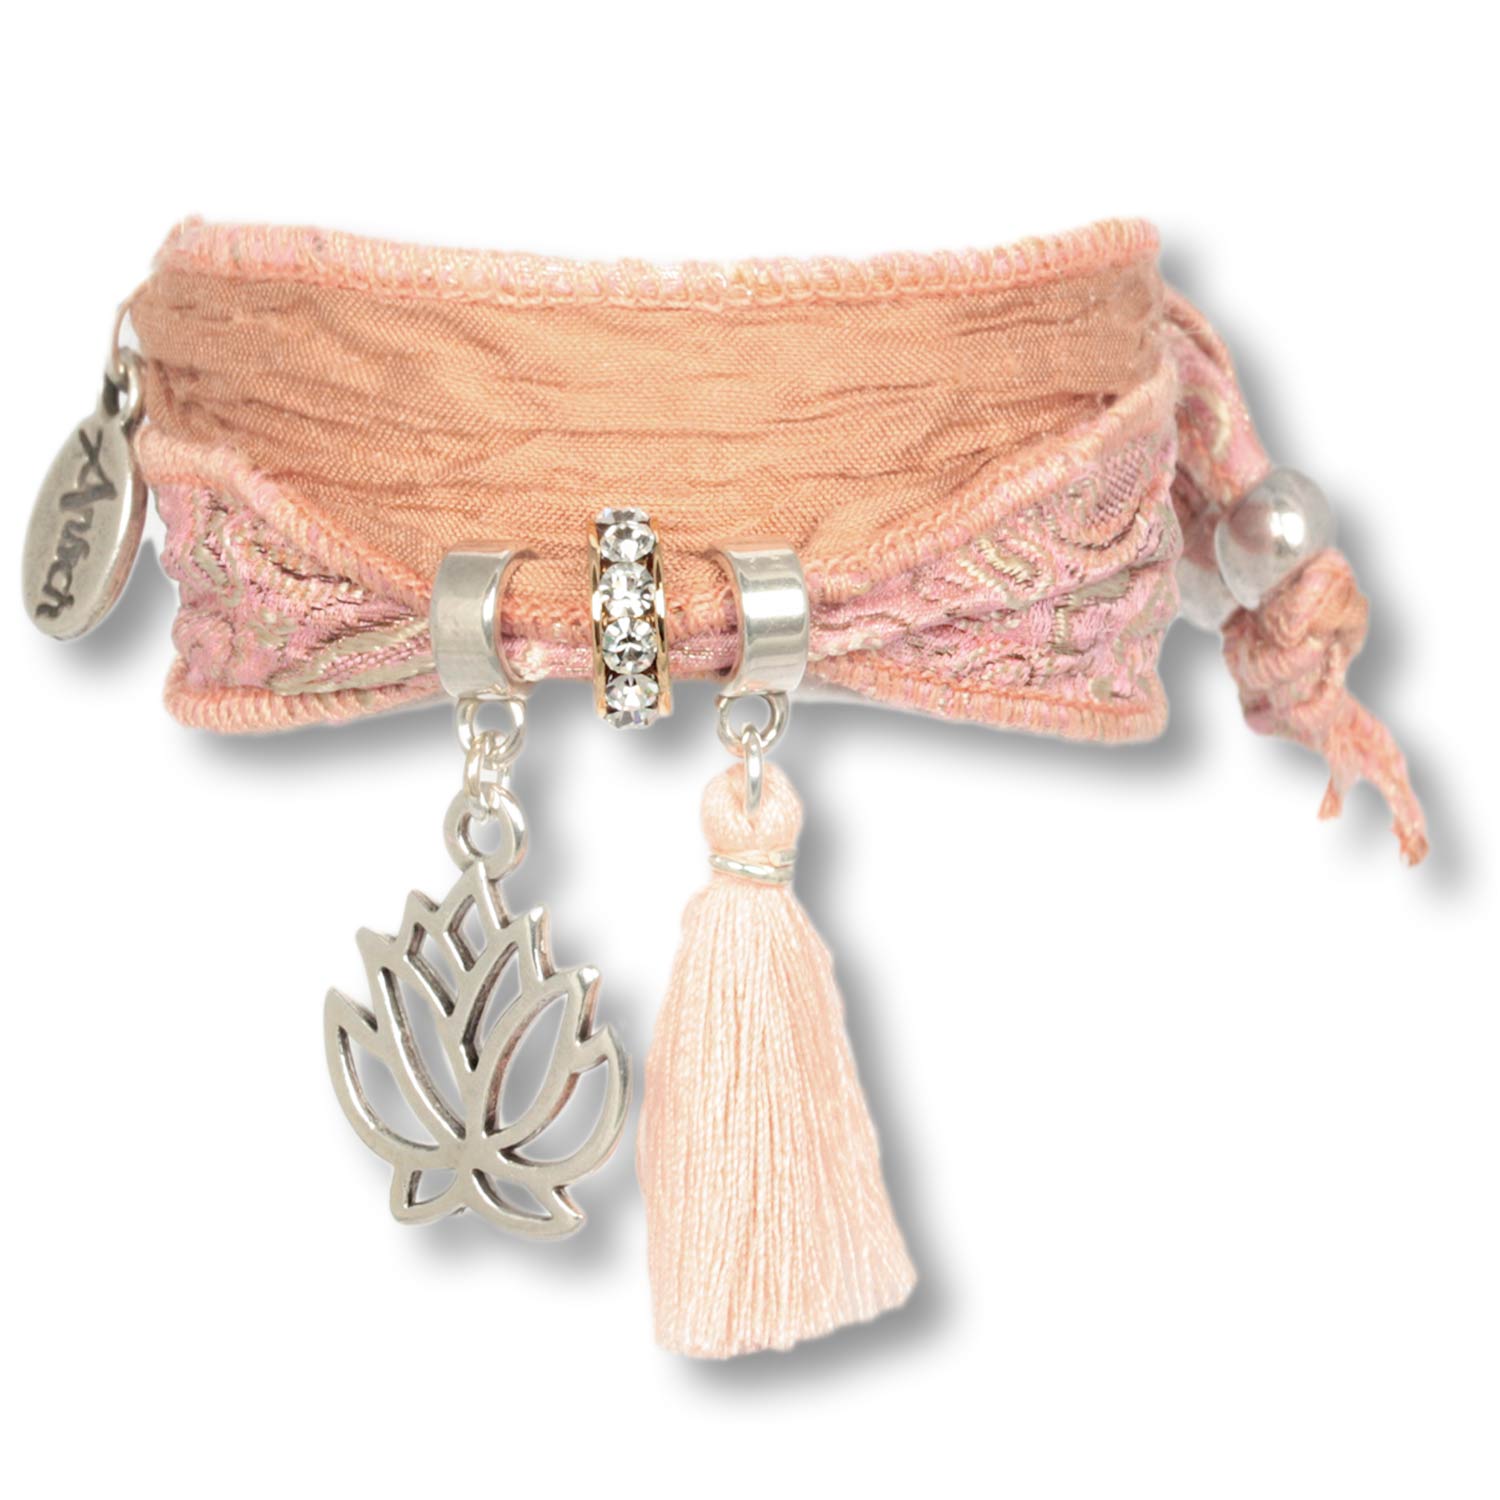 Pastel Ros- - Lotus Purity Bracelet from Indian Saris